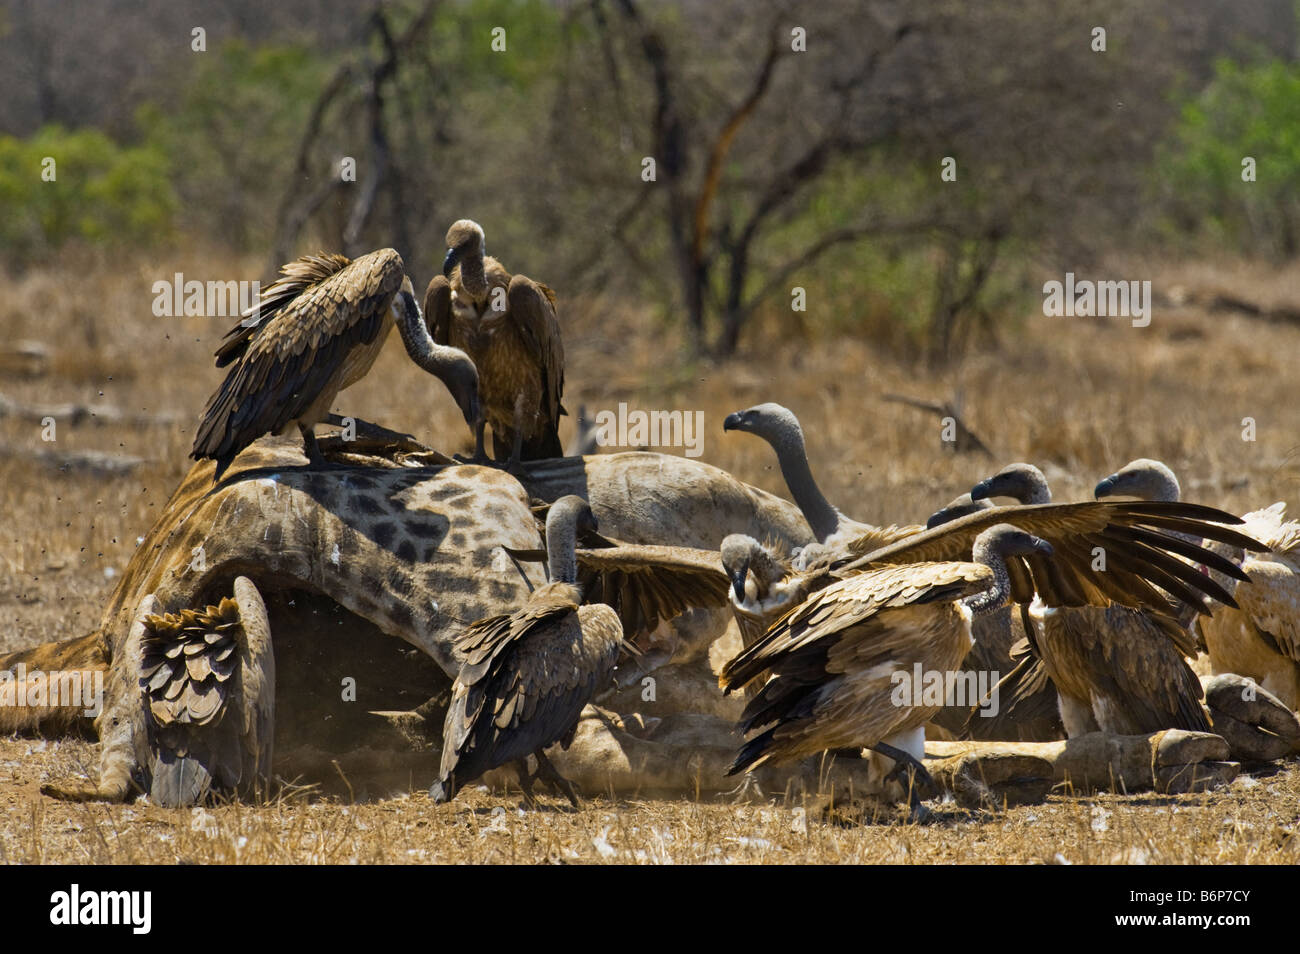 De nombreux sauvages de la faune beaucoup beaucoup de vautours charognards vautours manger au sud-Afrika afrique du sud alimentation alimentation alimentation girafe scavenger Banque D'Images